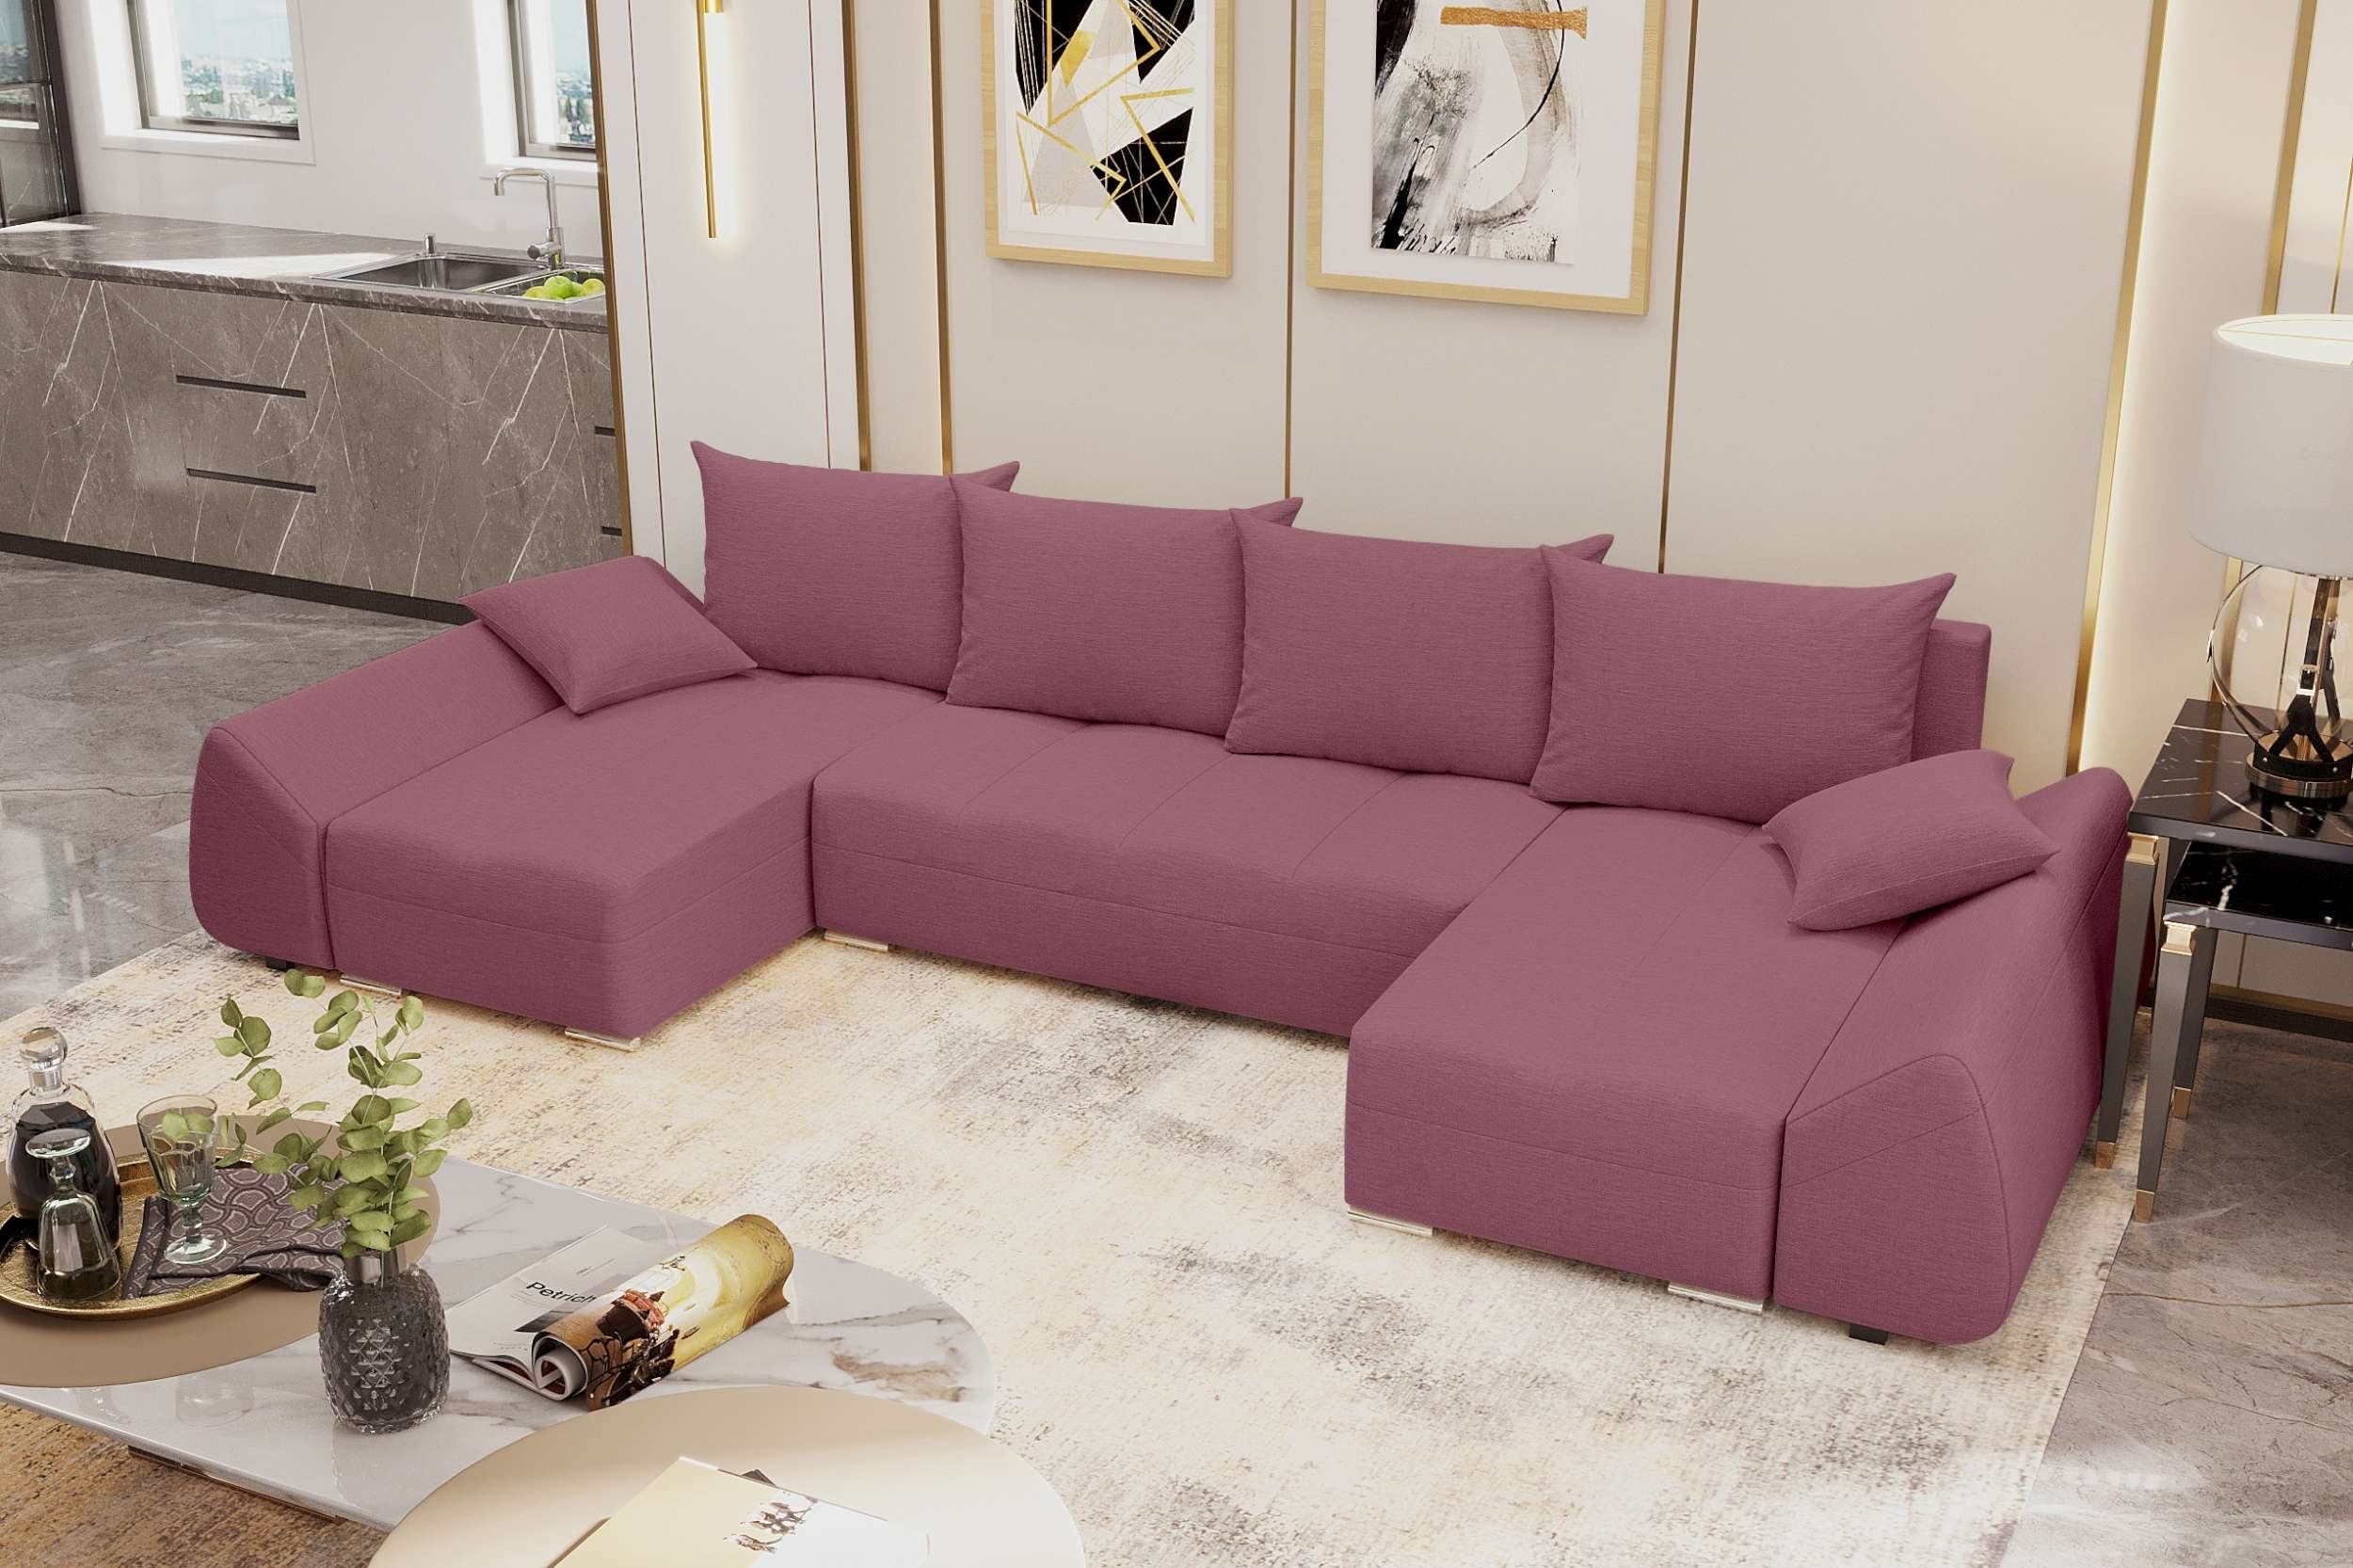 Sofa, Stylefy Design Bettkasten, U-Form, Modern Bettfunktion, mit Sitzkomfort, Eckcouch, Wohnlandschaft Madeira, mit